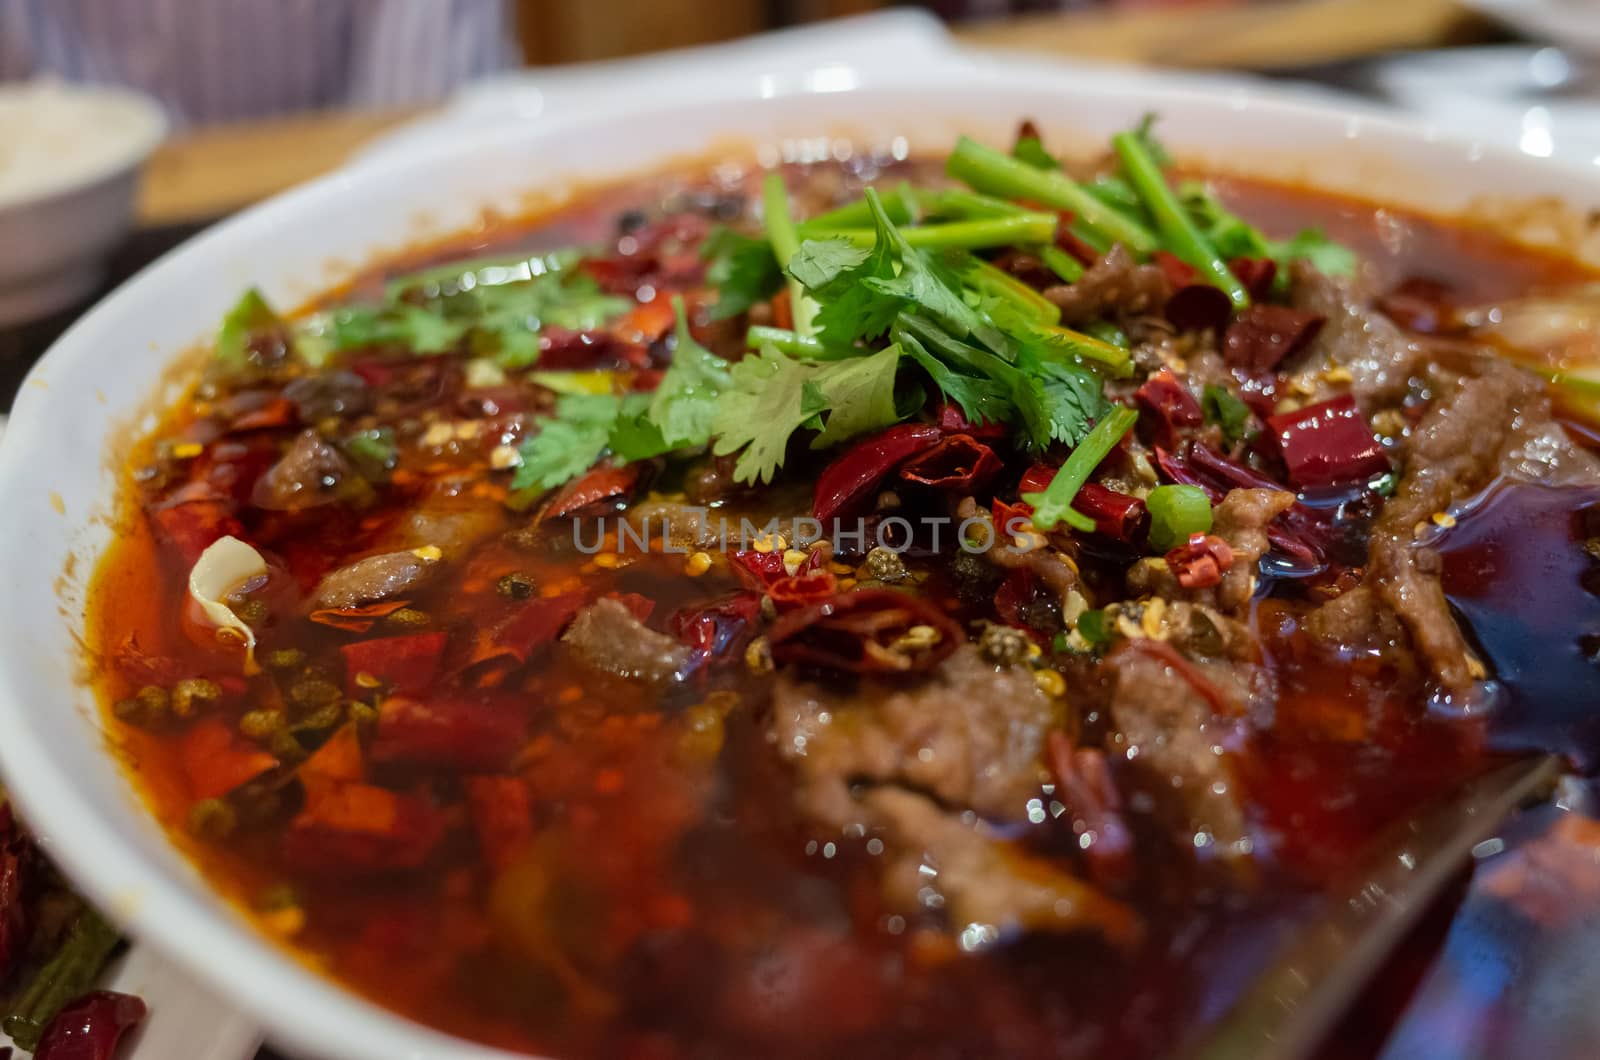 A bowl of spicy Sze Chuan hot pot beef